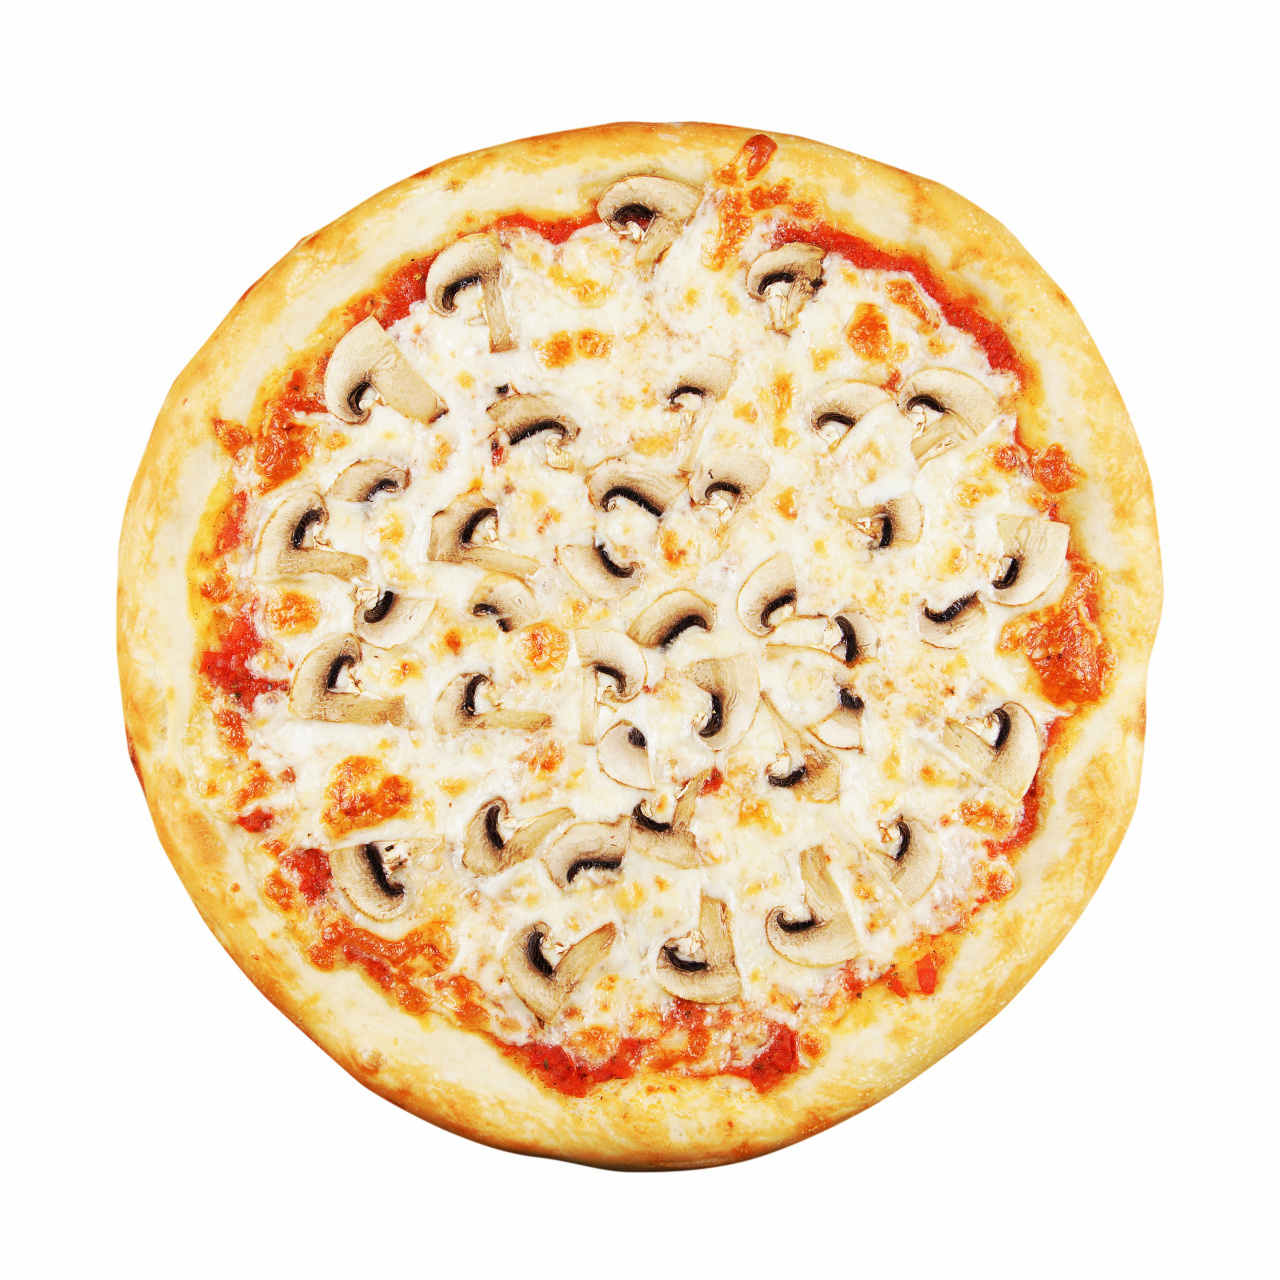 юлии высоцкой рецепты пиццы фото 70